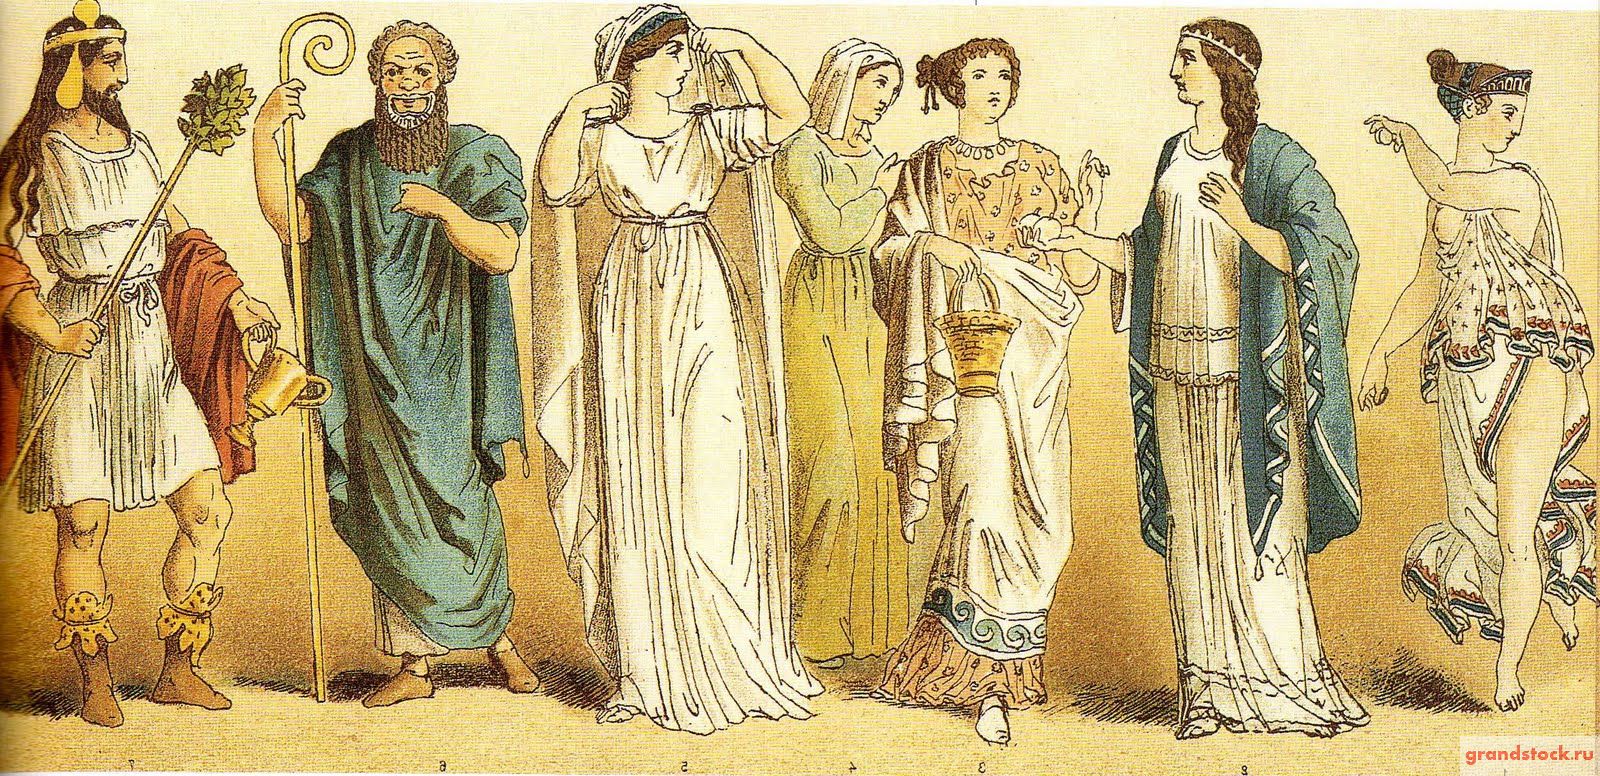 Одежда Древней Греции